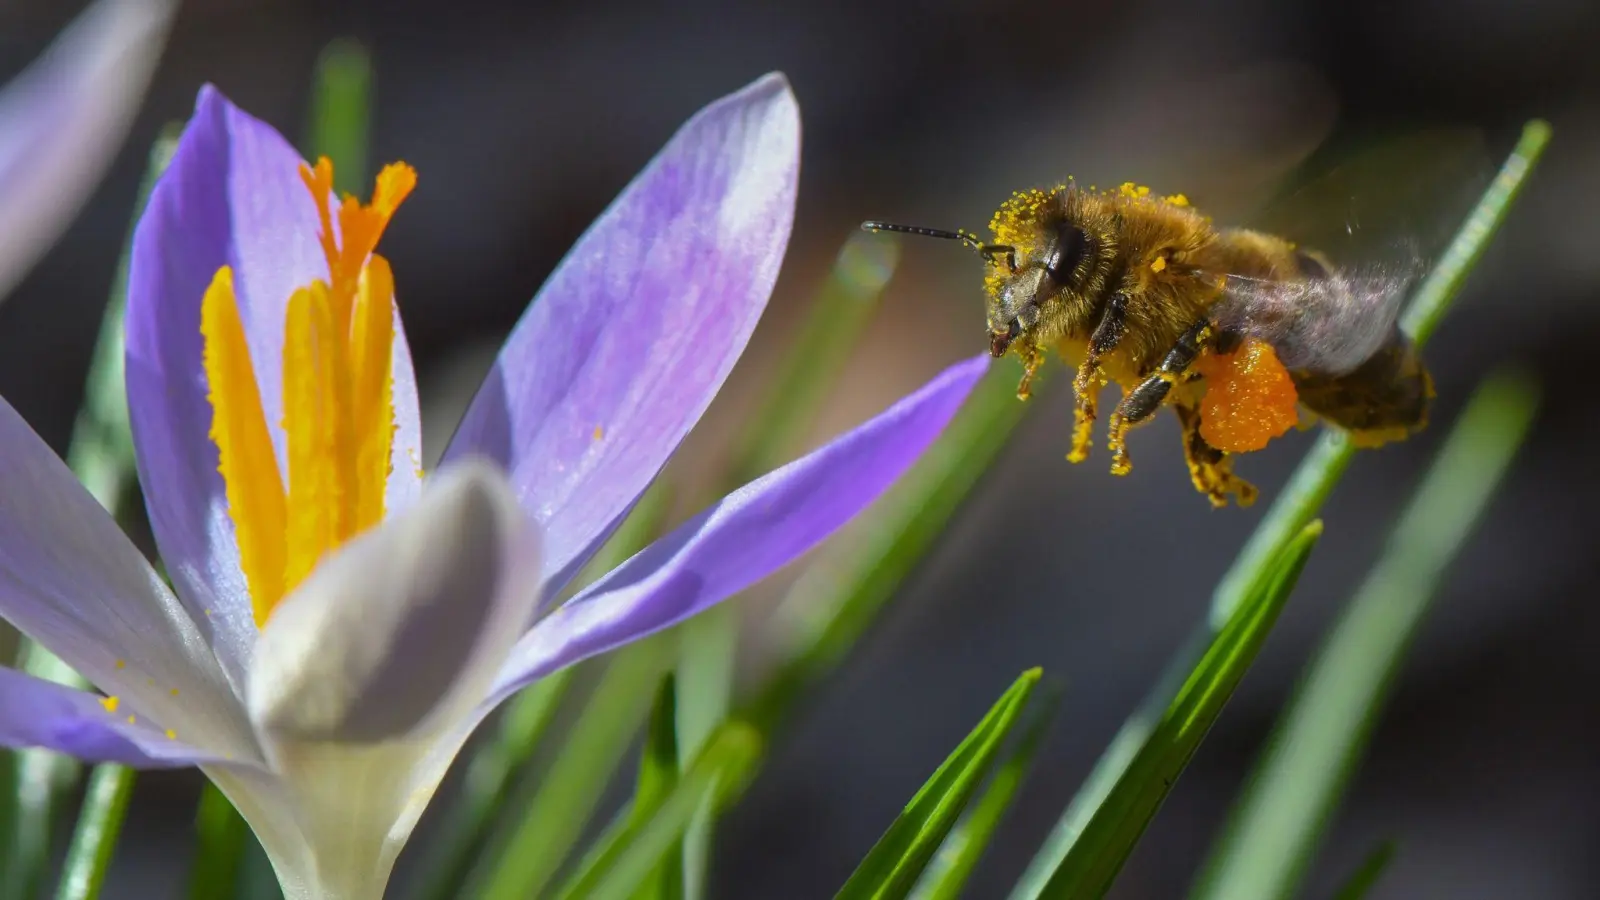 Wertvoll für die ersten Schwärmer: Krokusse geben den Bienen zum Frühlingsbeginn dringend benötigte Nahrung. Denn im Rest des Gartens blüht zu dieser Zeit noch wenig. (Foto: Patrick Pleul/dpa-Zentralbild/dpa-tmn)